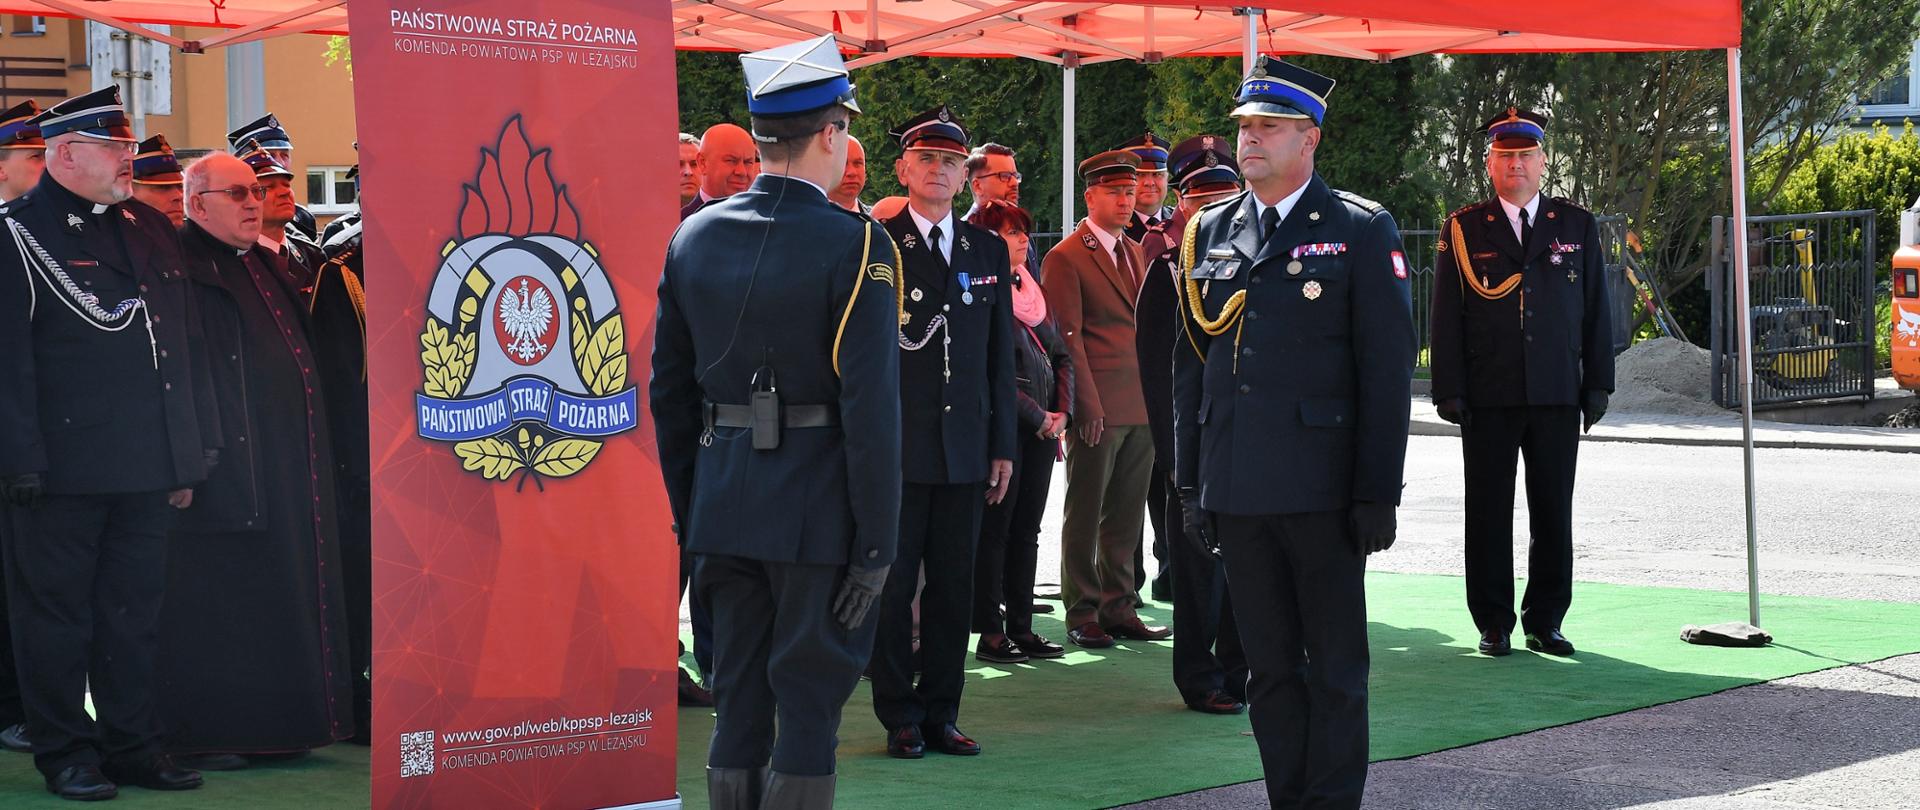 Na zdjęciu widzimy Zastępcę Komendanta Wojewódzkiego PSP odbierającego meldunek od dowódcy uroczystości.